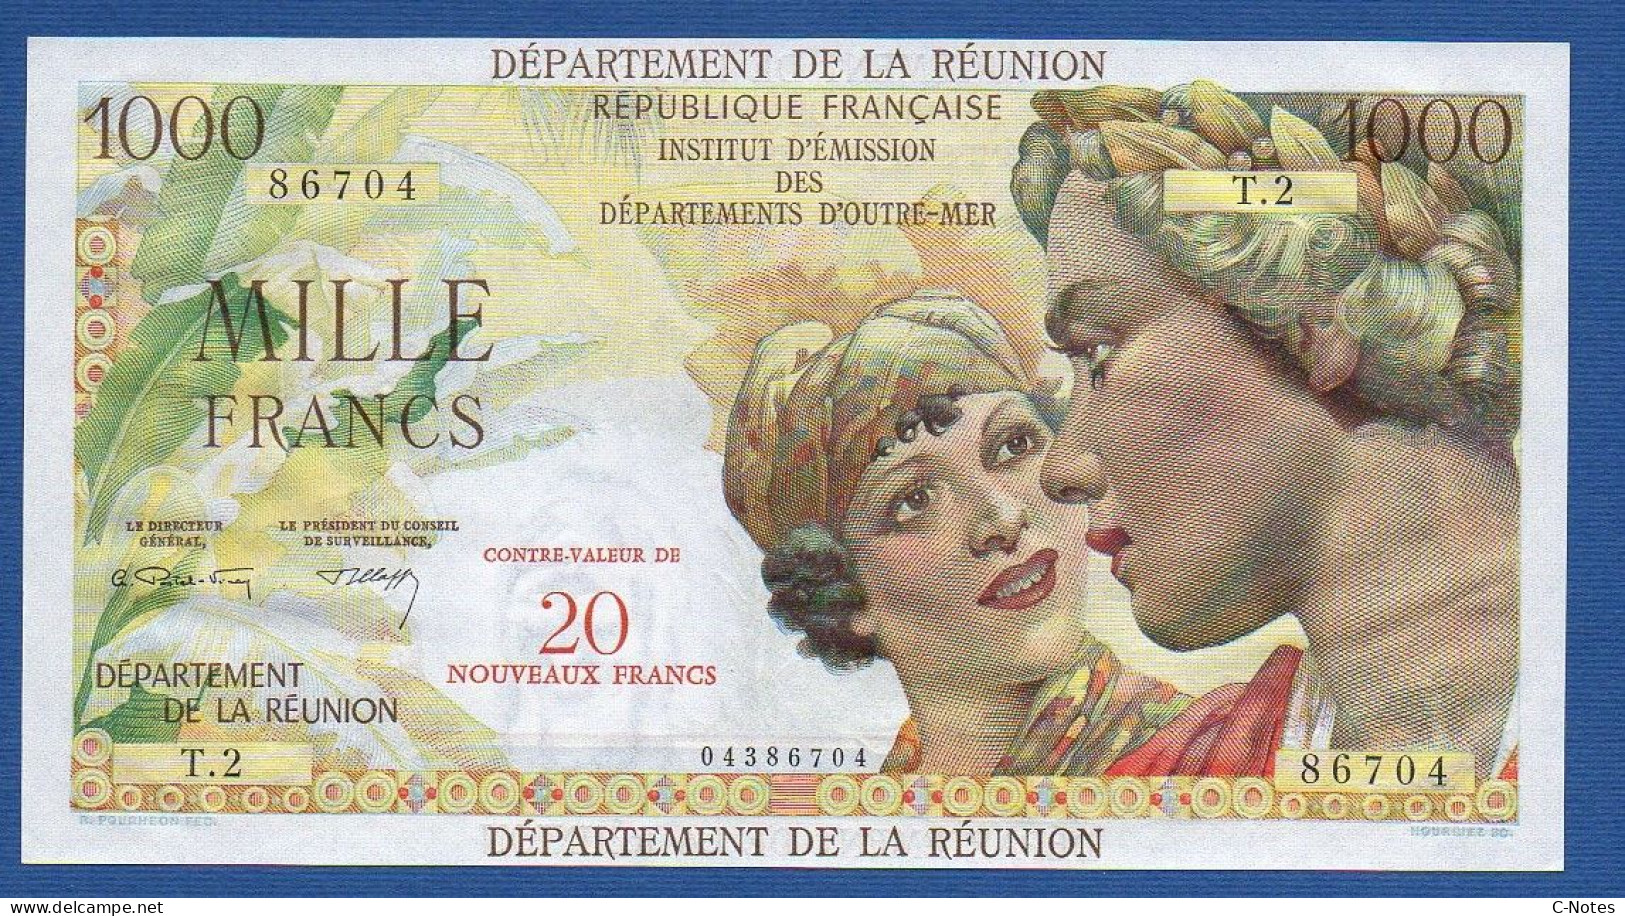 RÉUNION - P.55b – 20 Nouveaux Francs ND (1971) UNC, S/n T.2 86704 - Reunion